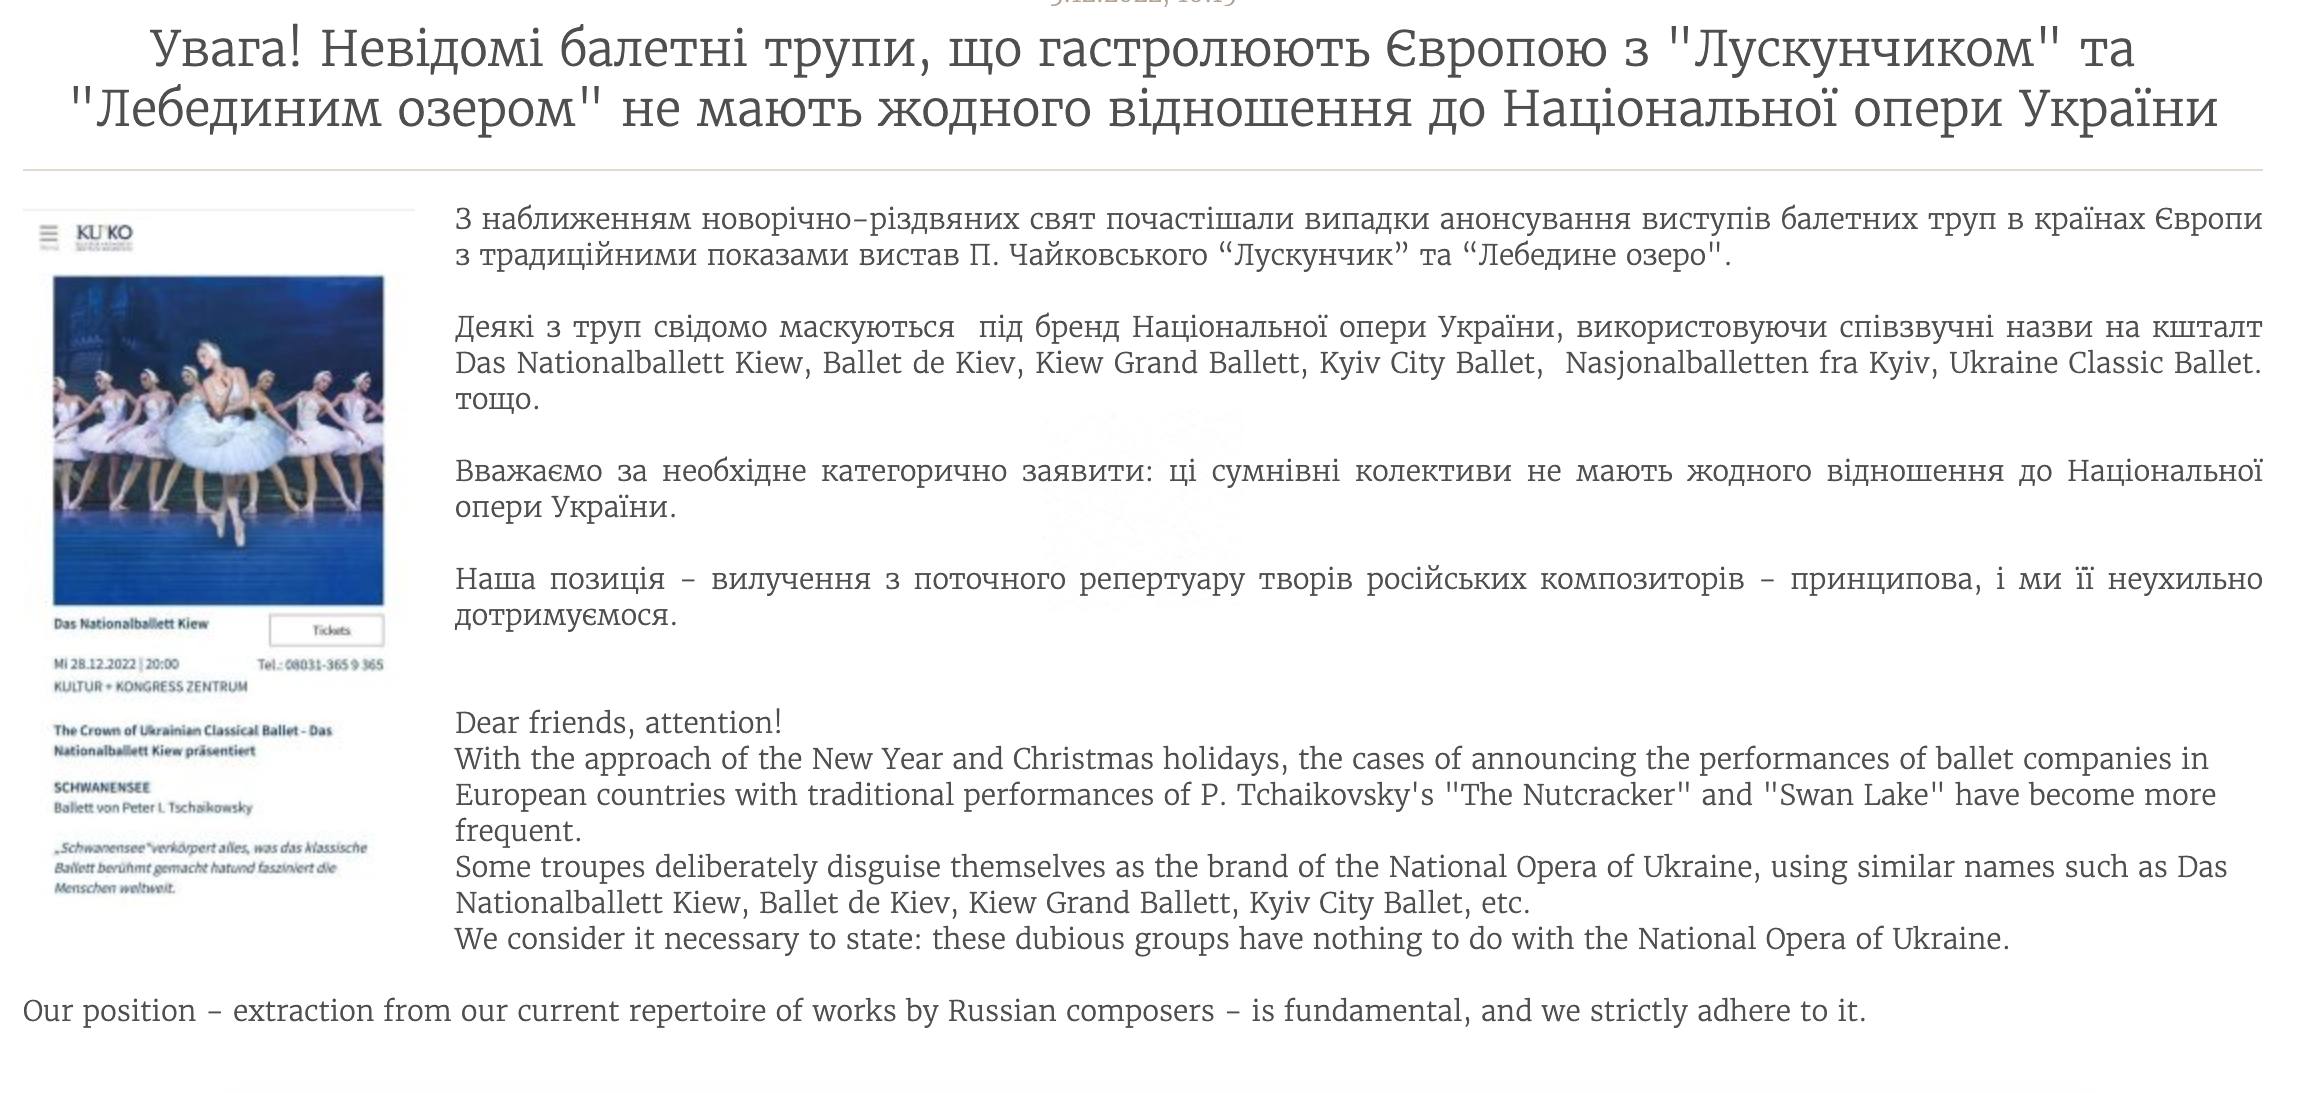 В Национальной опере Украины даже сделали объявления, чтобы не велись на фальшивые гастроли. Скрин: opera.com.ua